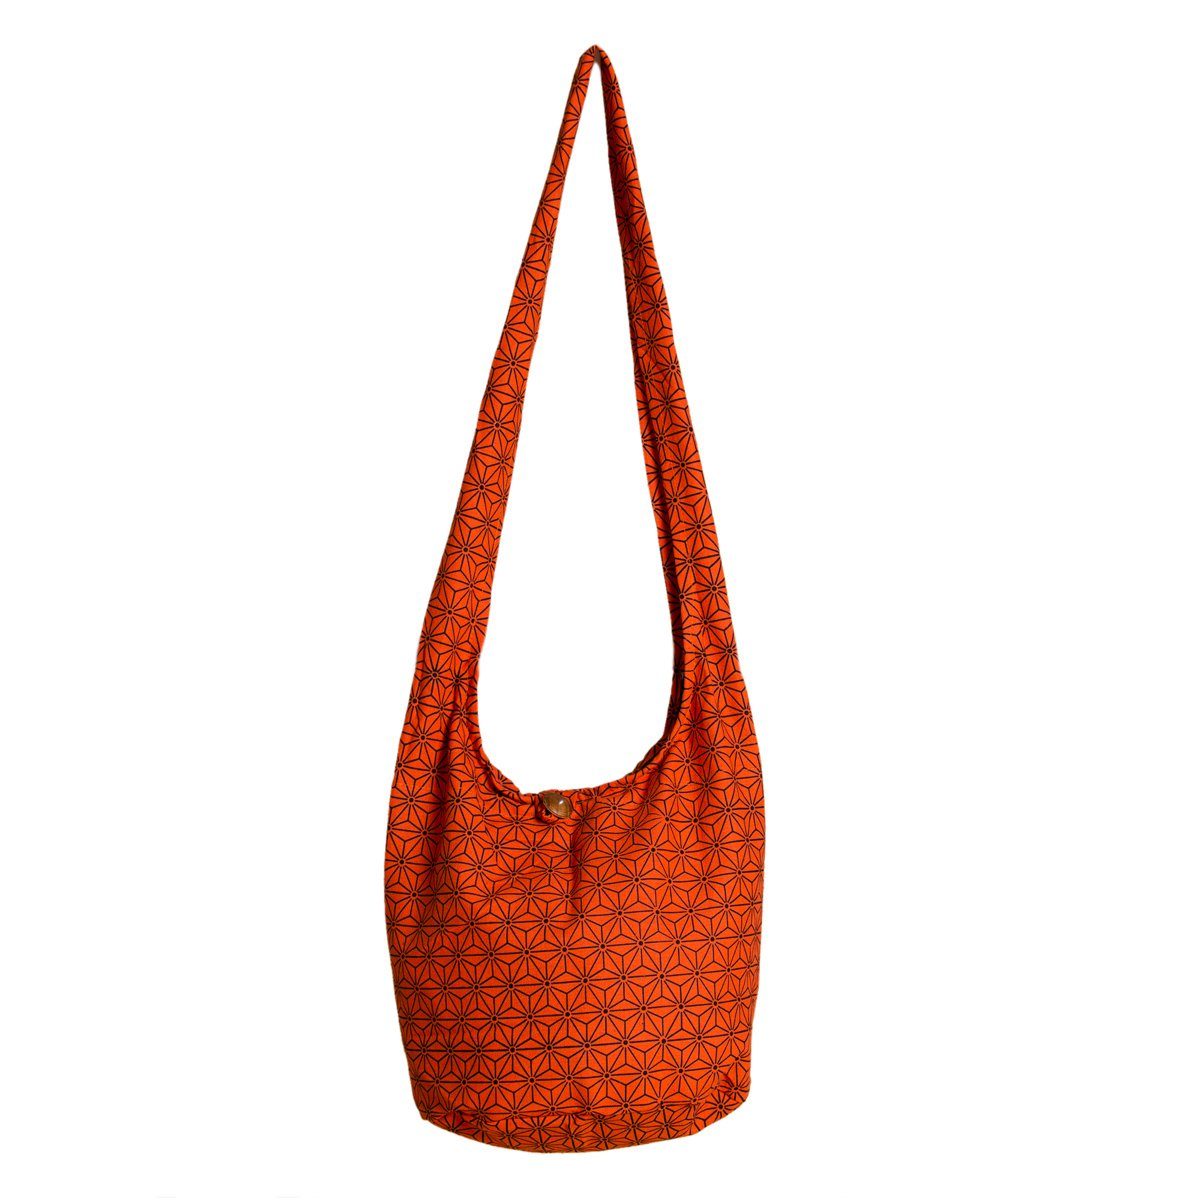 PANASIAM Schultertasche Geometrix Schulterbeutel aus 100% Baumwolle praktische Umhängetasche, In 2 Größen Beuteltasche auch als Wickeltasche und Handtasche geeignet Asanoha orange